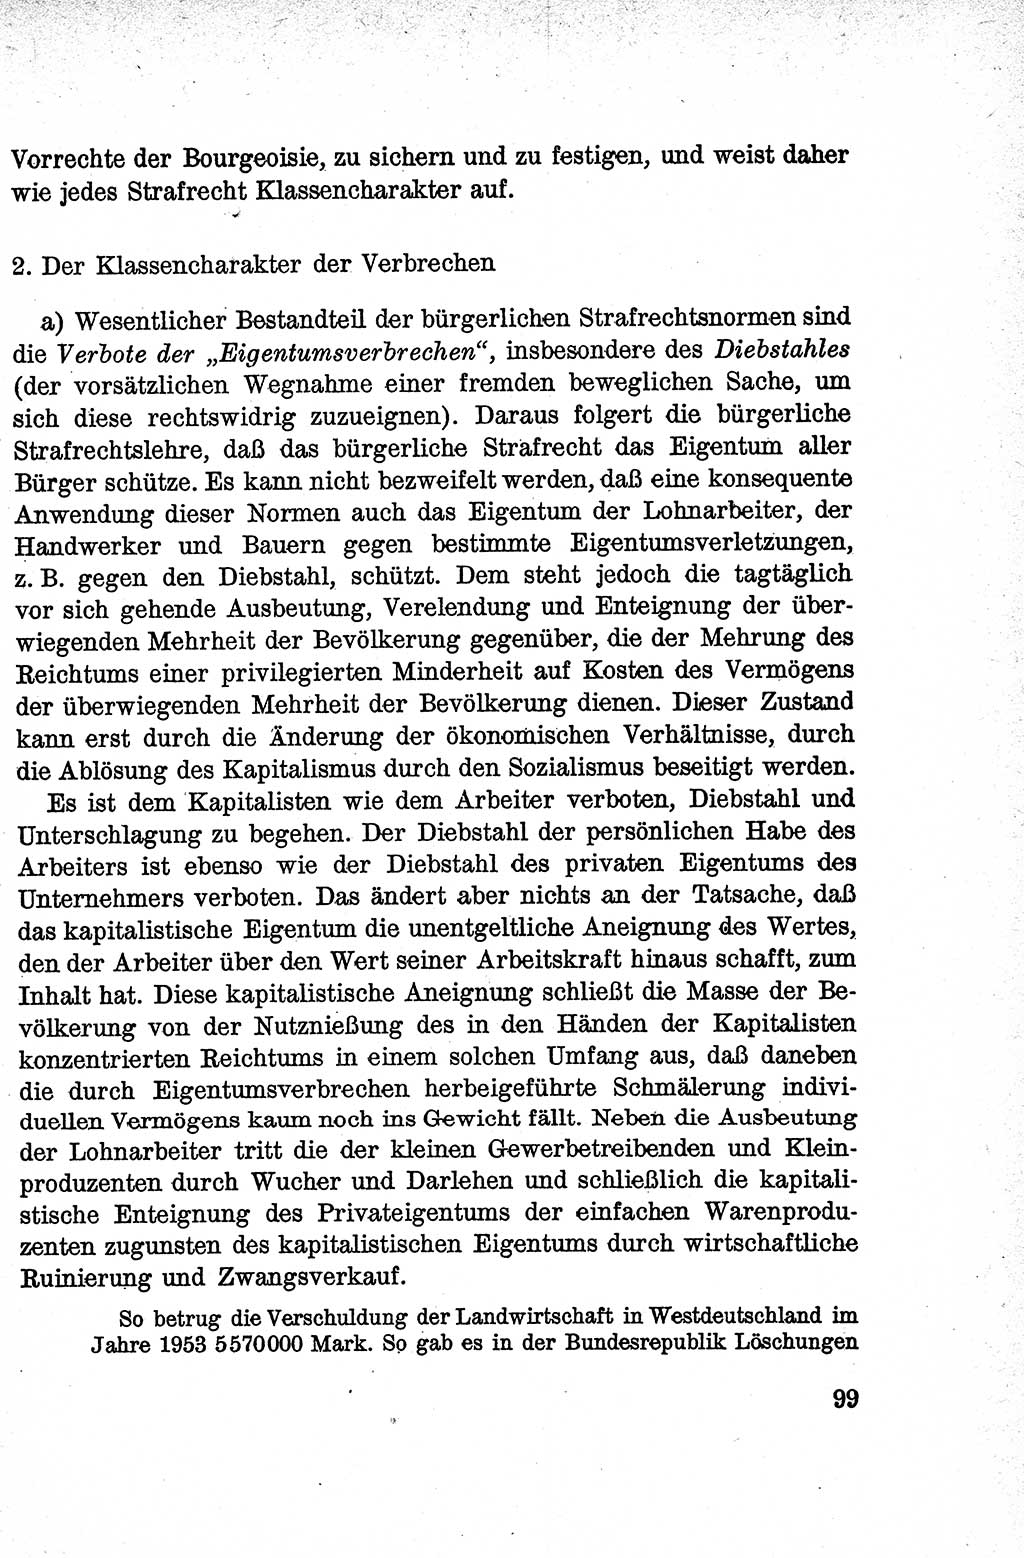 Lehrbuch des Strafrechts der Deutschen Demokratischen Republik (DDR), Allgemeiner Teil 1959, Seite 99 (Lb. Strafr. DDR AT 1959, S. 99)